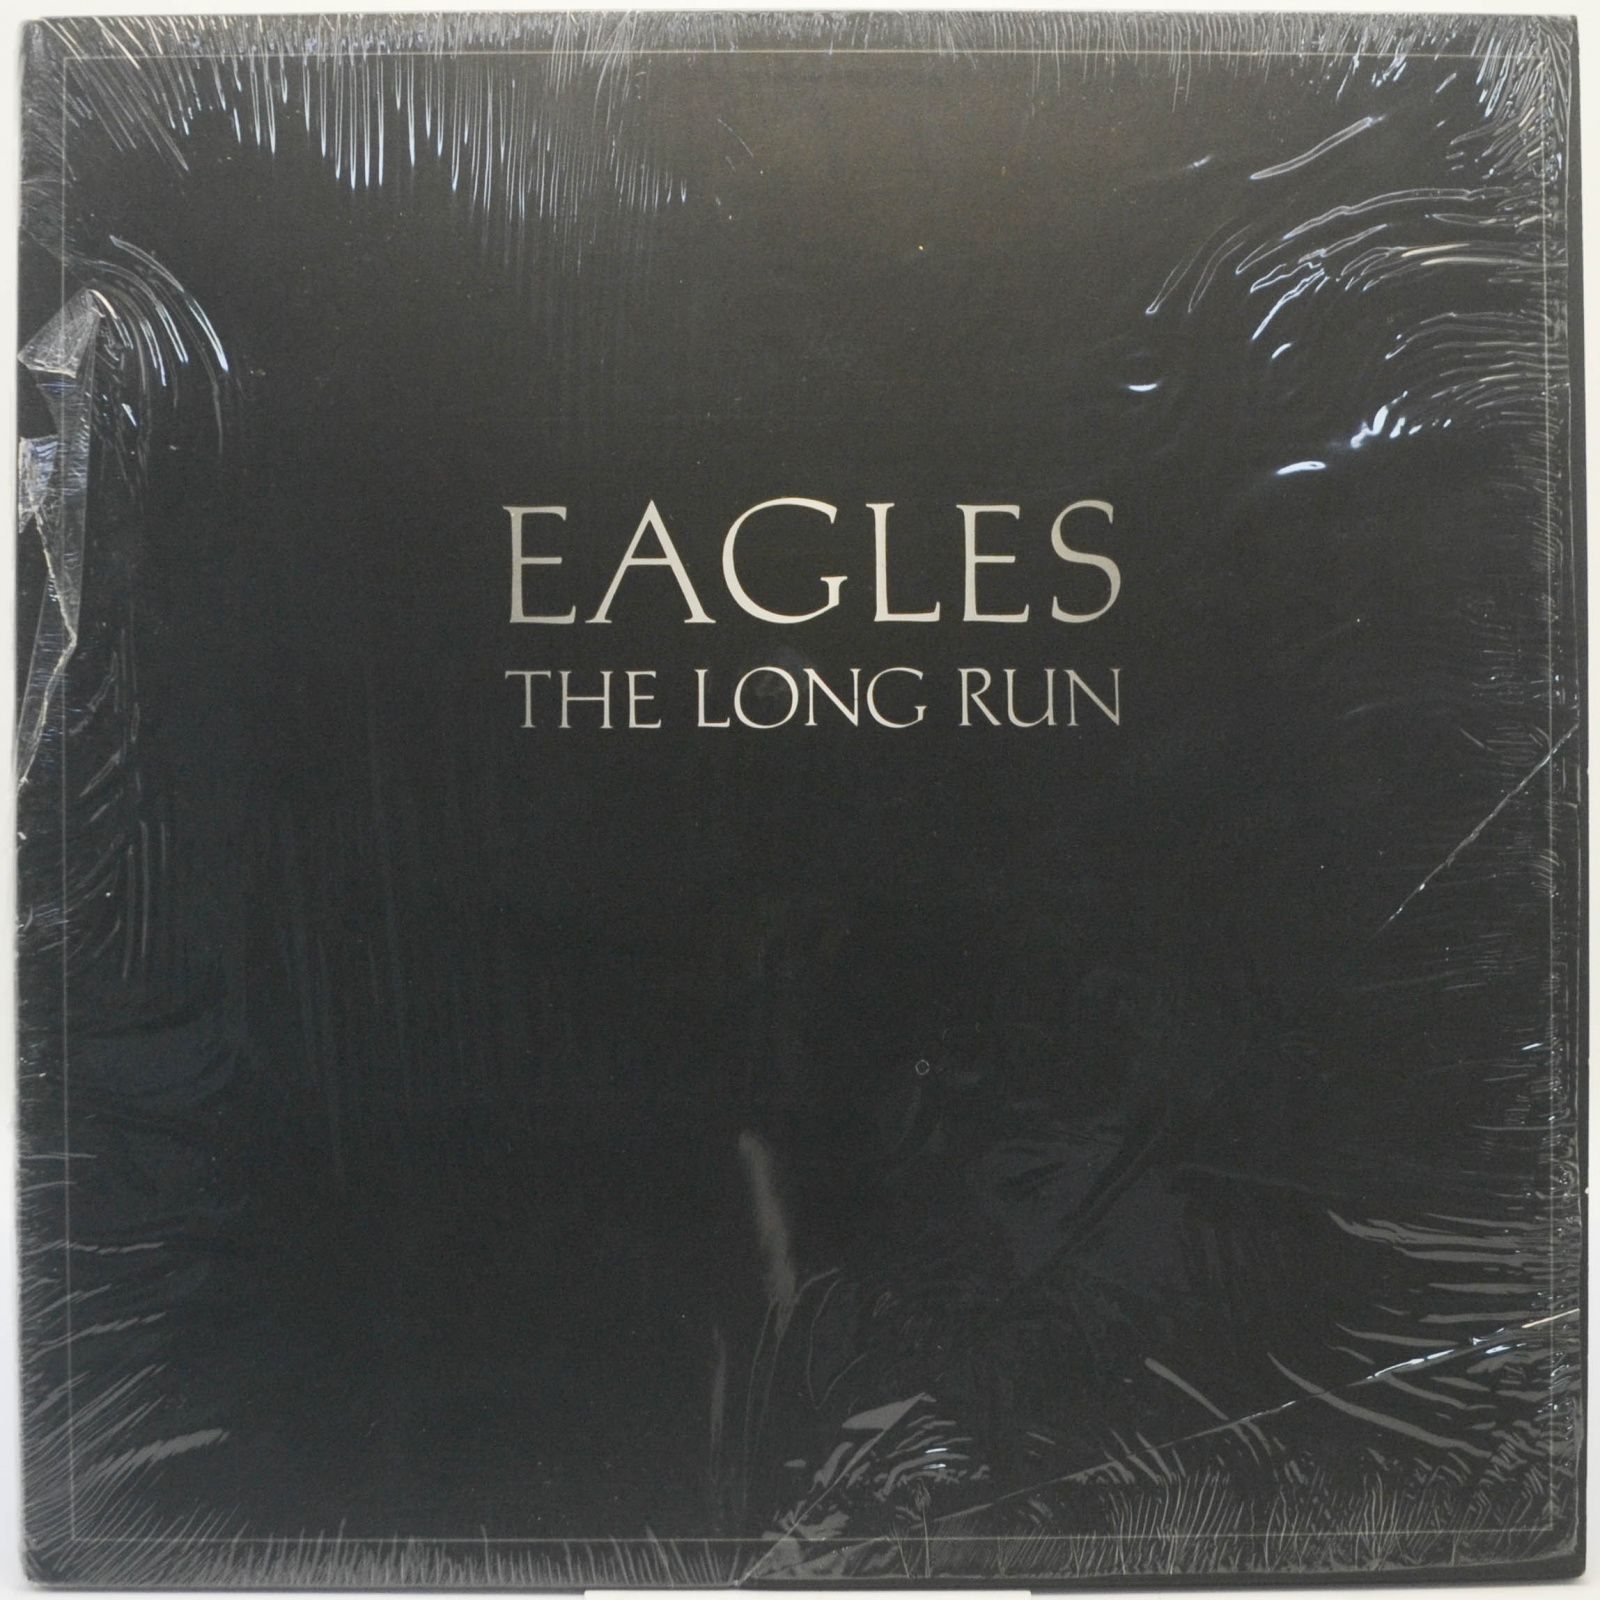 Eagles — The Long Run (USA), 1979